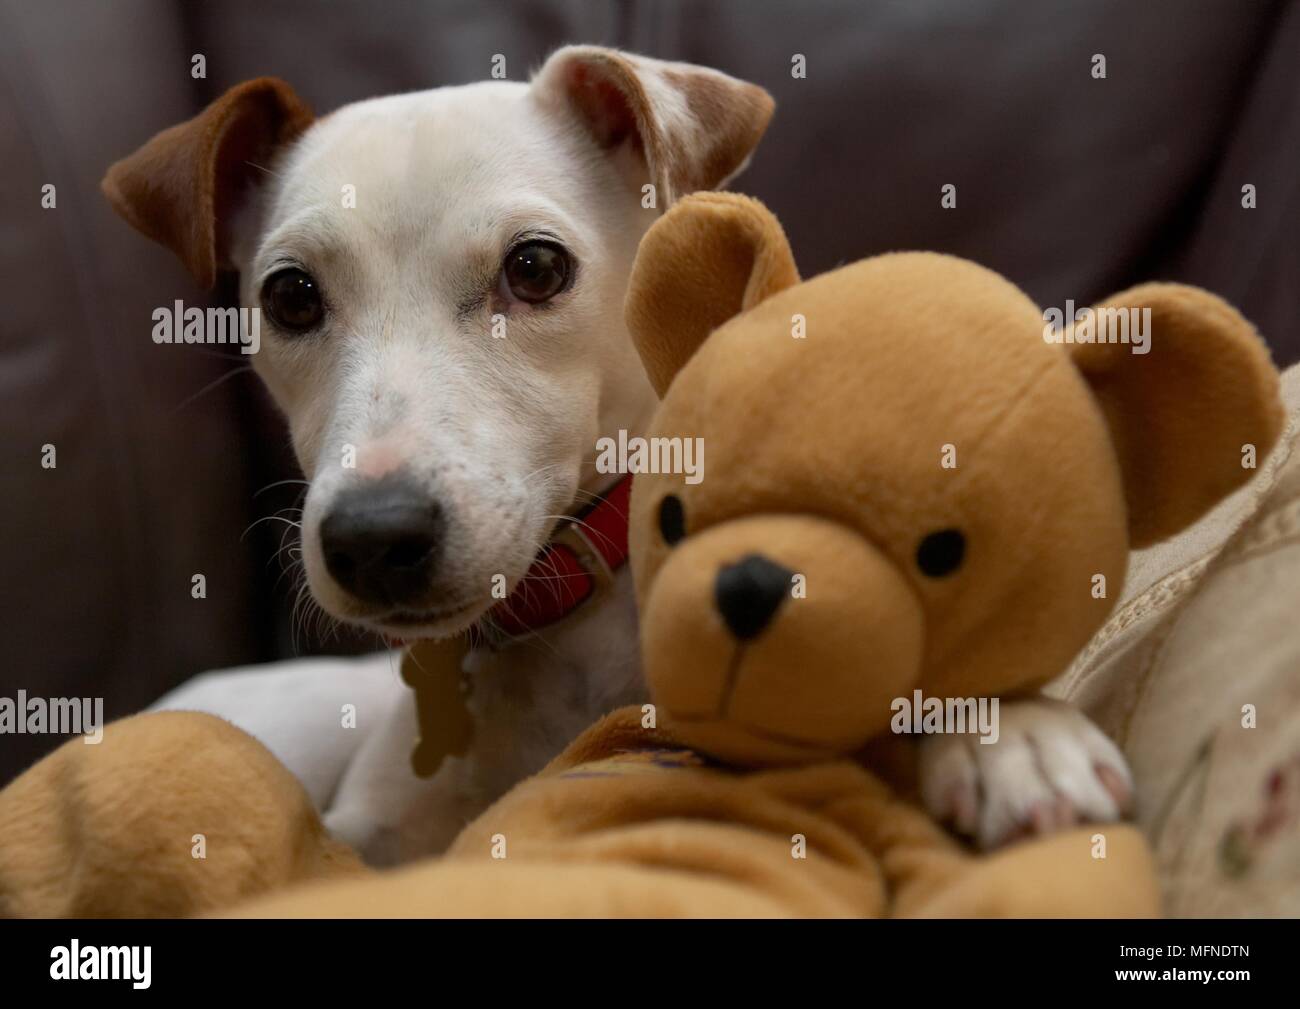 Un Jack Russel chien et son ours en peluche posé sur la table. Date :  05.10.2005 Ref : B49 0002 092437 CRÉDIT OBLIGATOIRE : Mark Fairhurst / UPPA  / Photos Photo Stock - Alamy